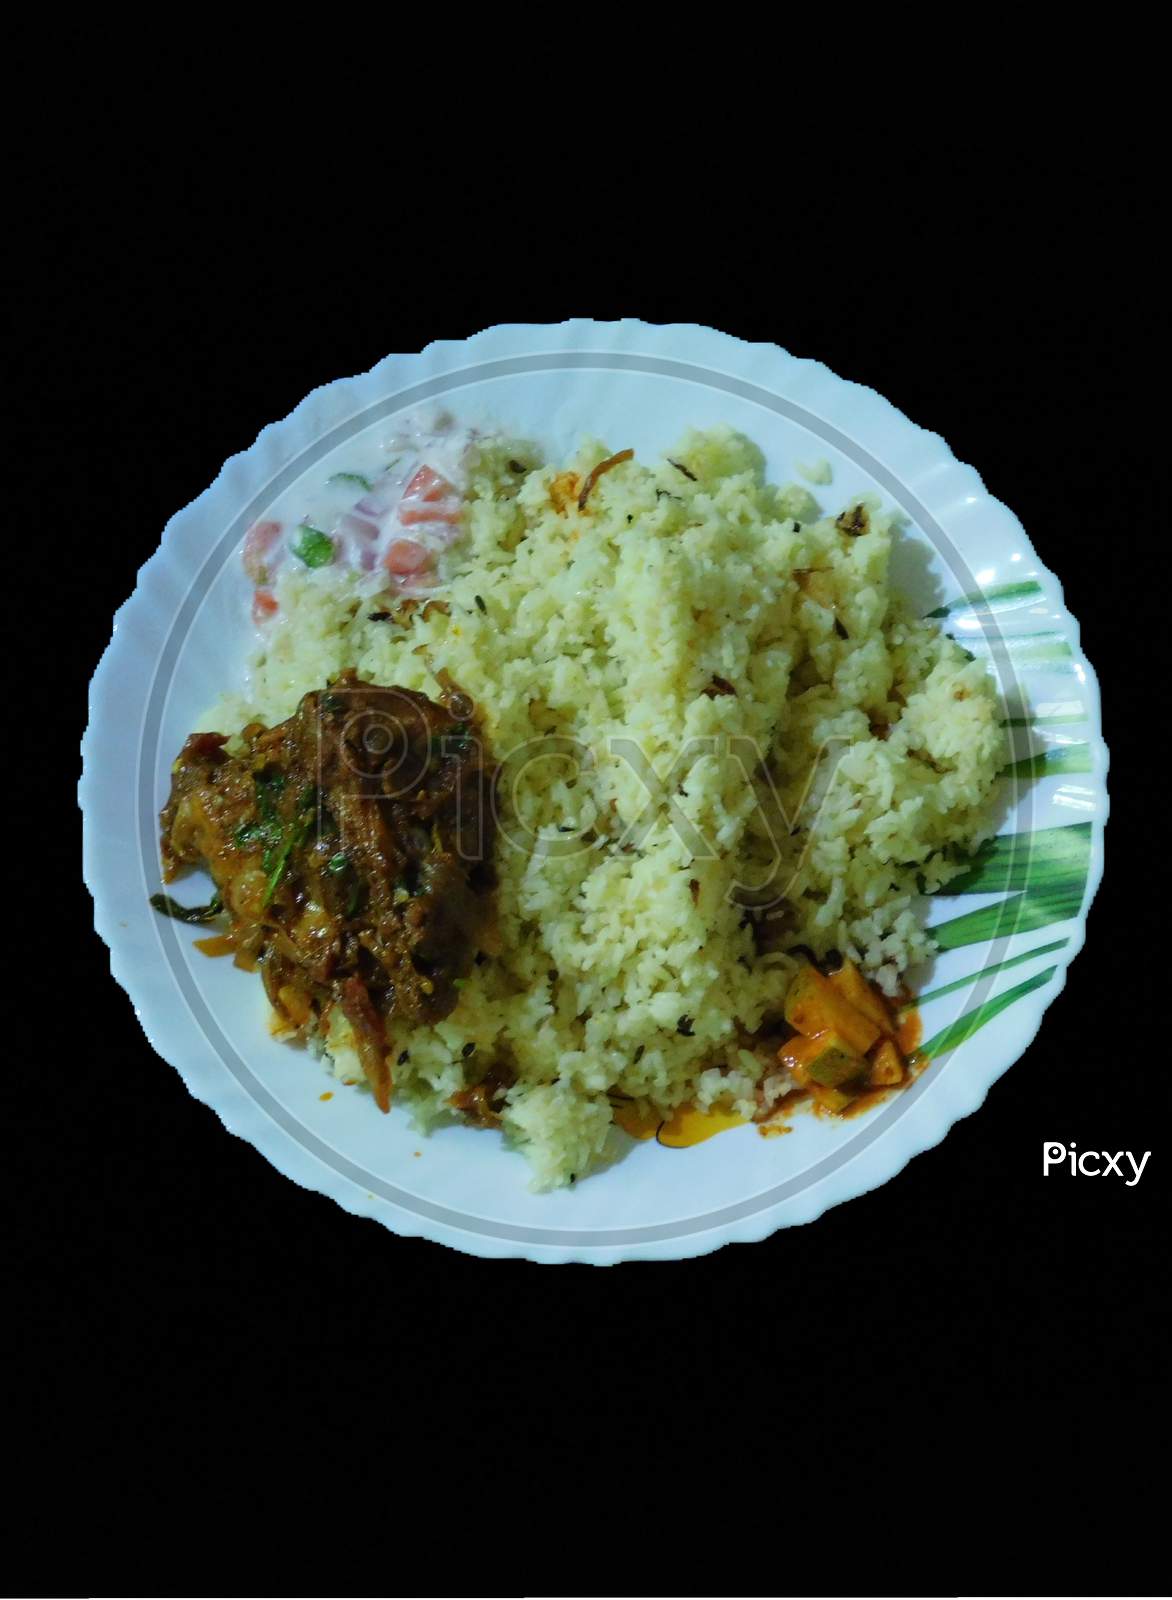 Delicious Food( Biriyani) In A Bowl